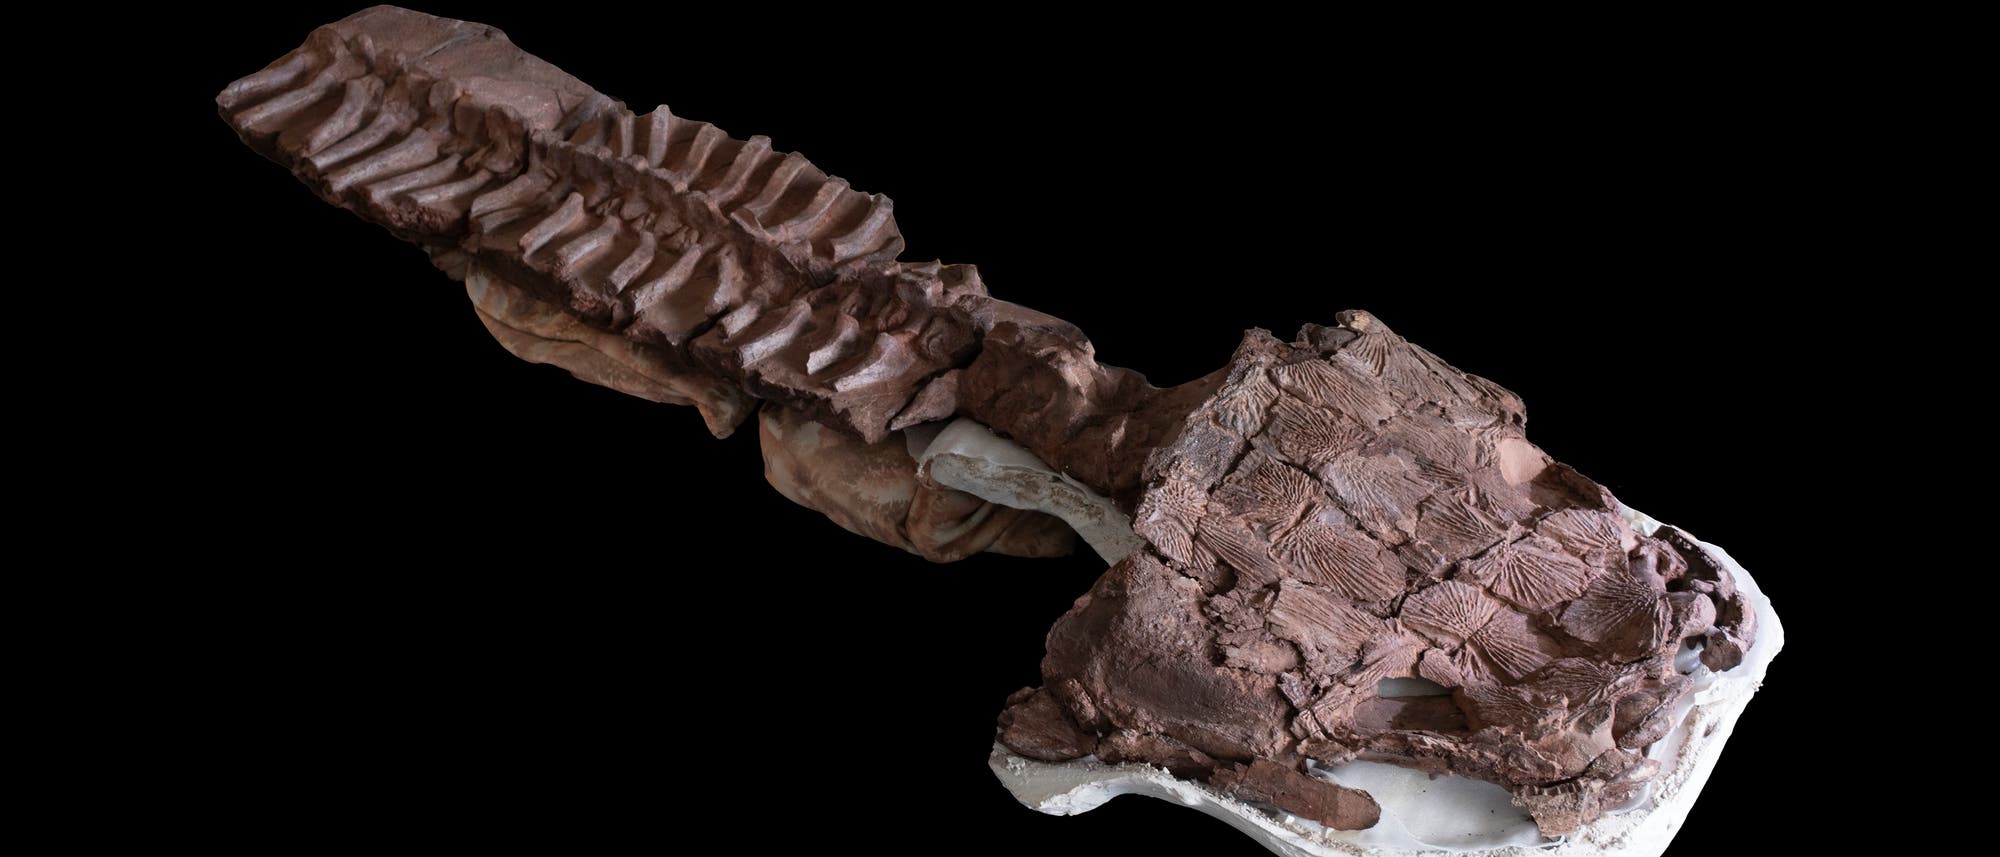 Fossile Überreste von Gaiasia jennyae auf einem schwarzen Untergrund, der Kopf liegt auf einem weißen Gipsabdruck, das Fossil selbst ist bräunlich. An ihn schließt sich die Wirbelsäule mit Rippen an.